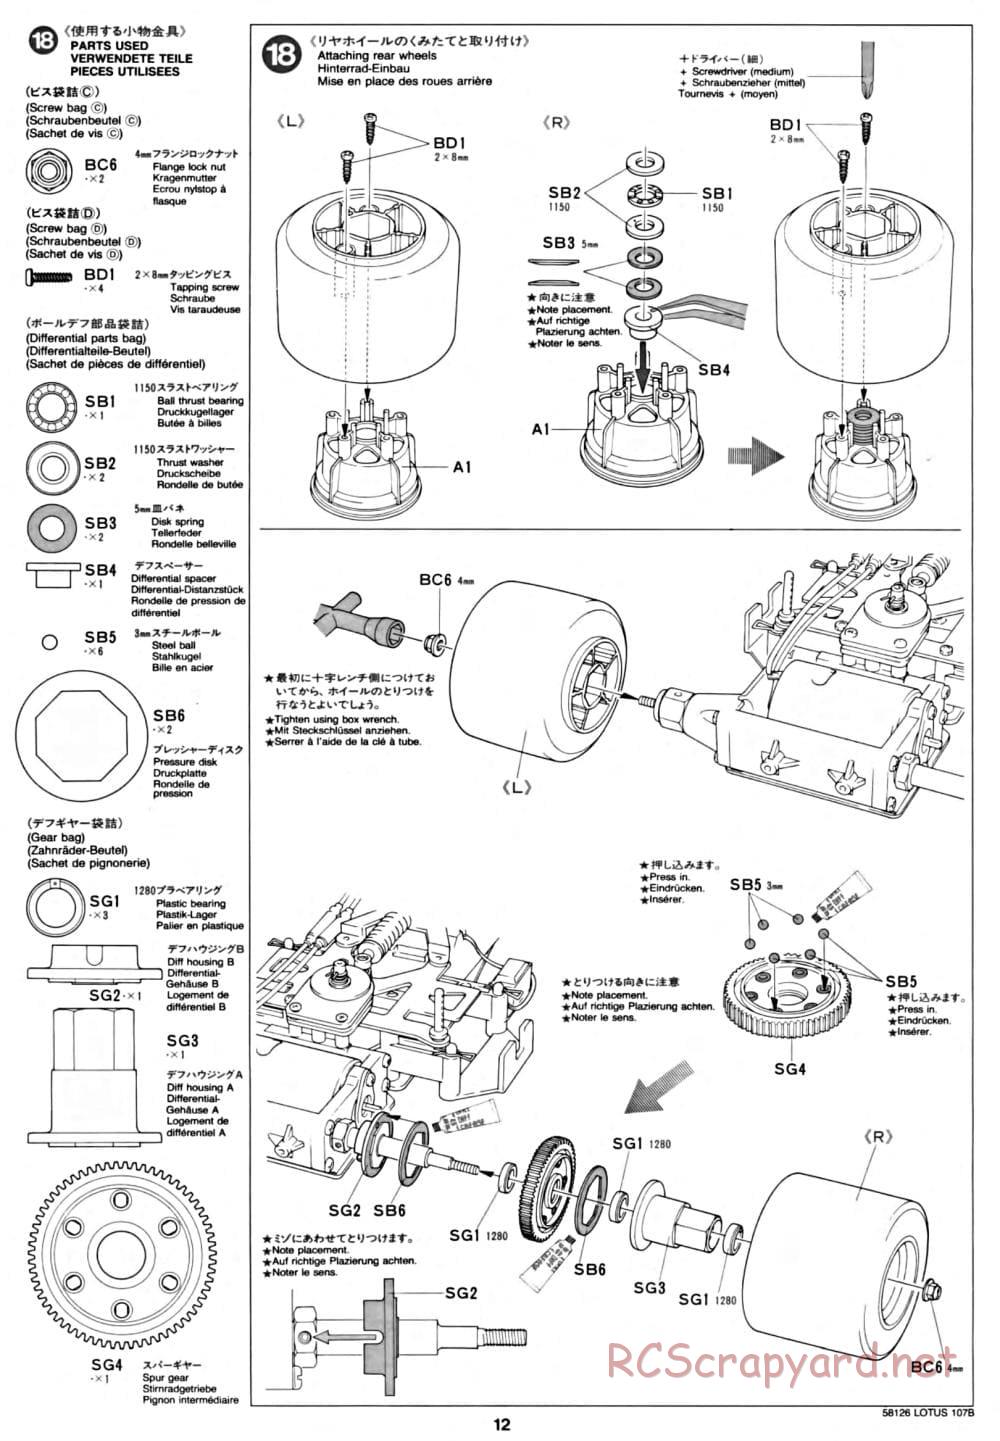 Tamiya - Lotus 107B Ford - F103 Chassis - Manual - Page 12